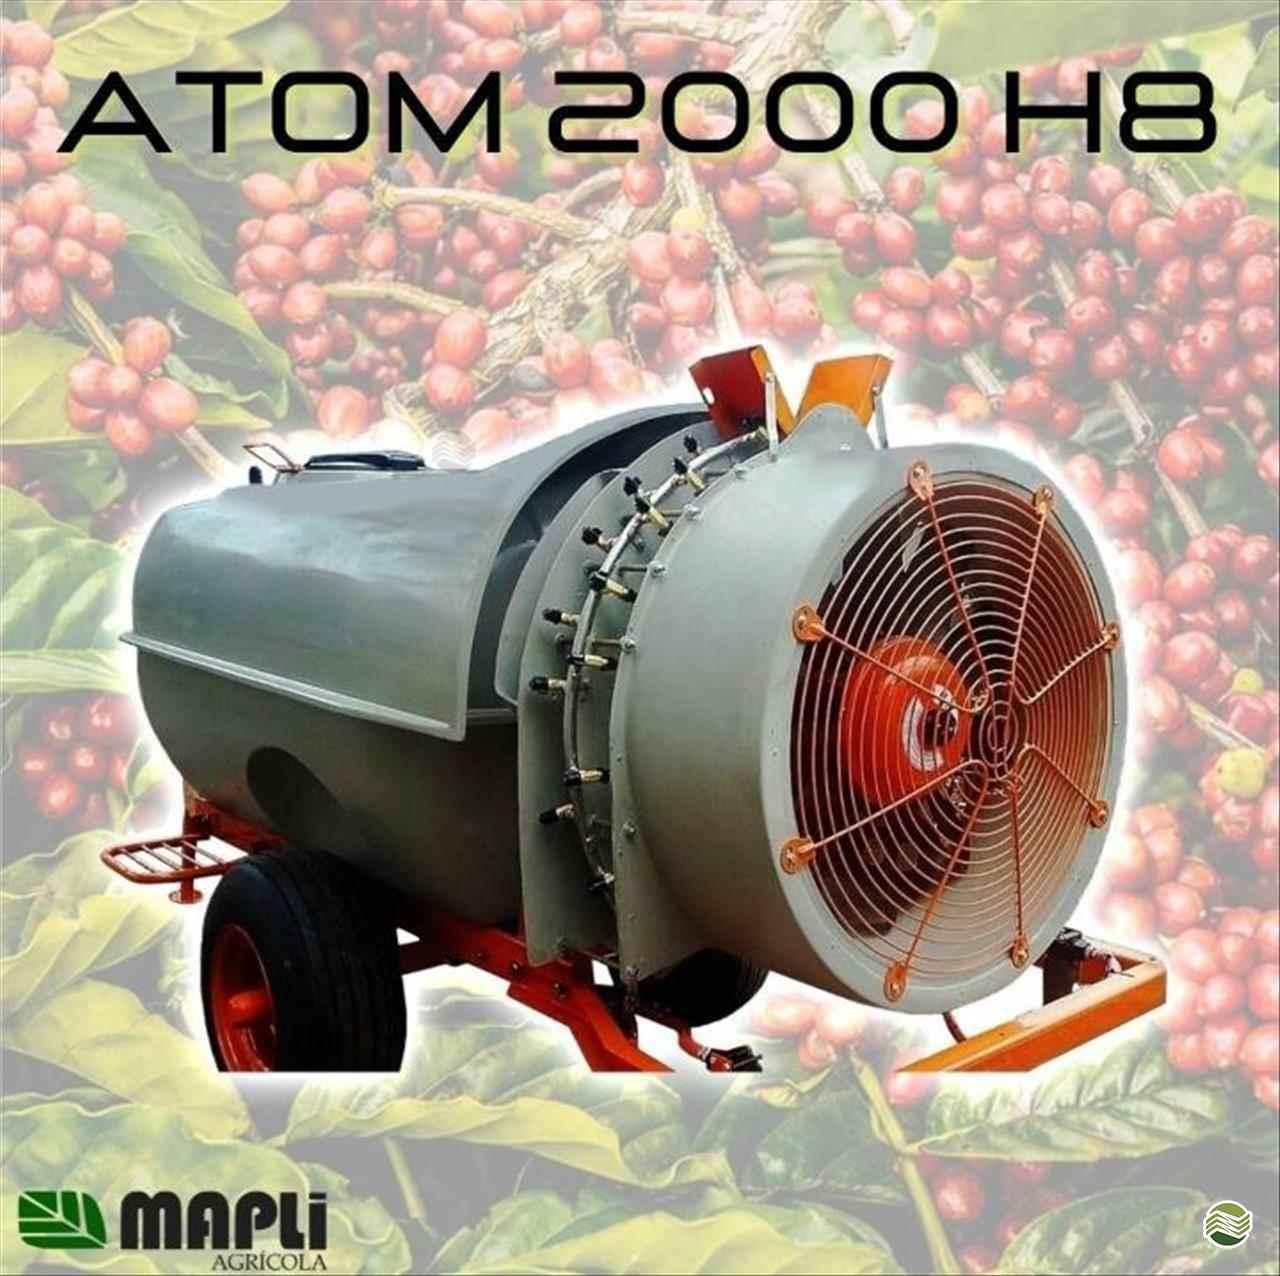 ATOM 2000 H8